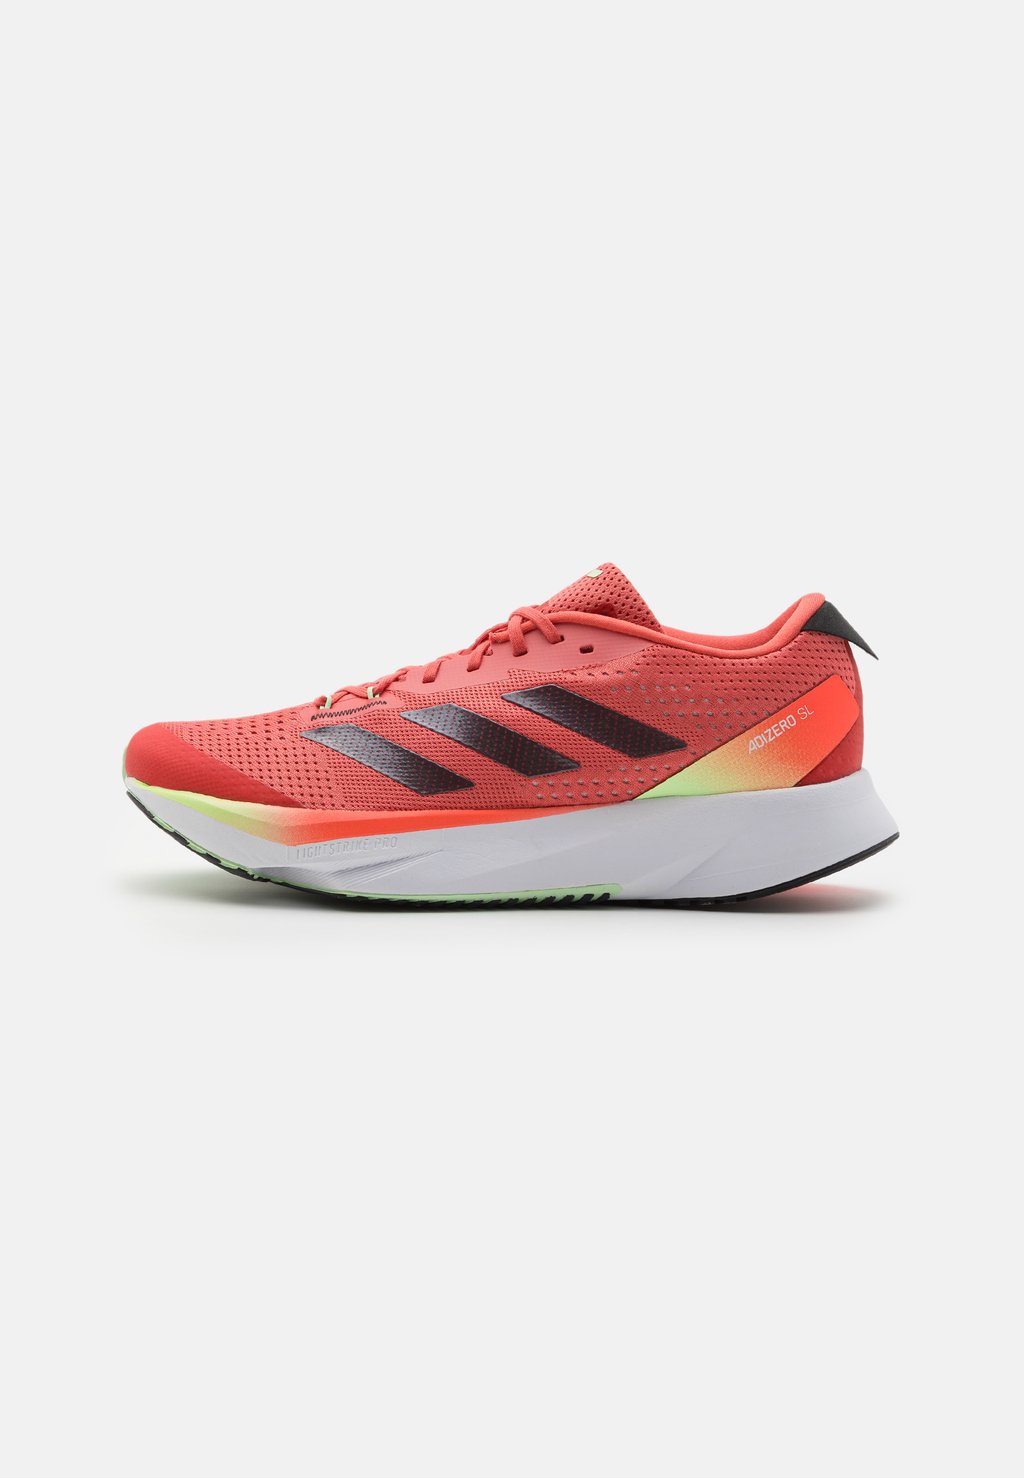 Нейтральные кроссовки Adizero Sl Adidas, цвет preloved scarlet/aurora metallic/solar red